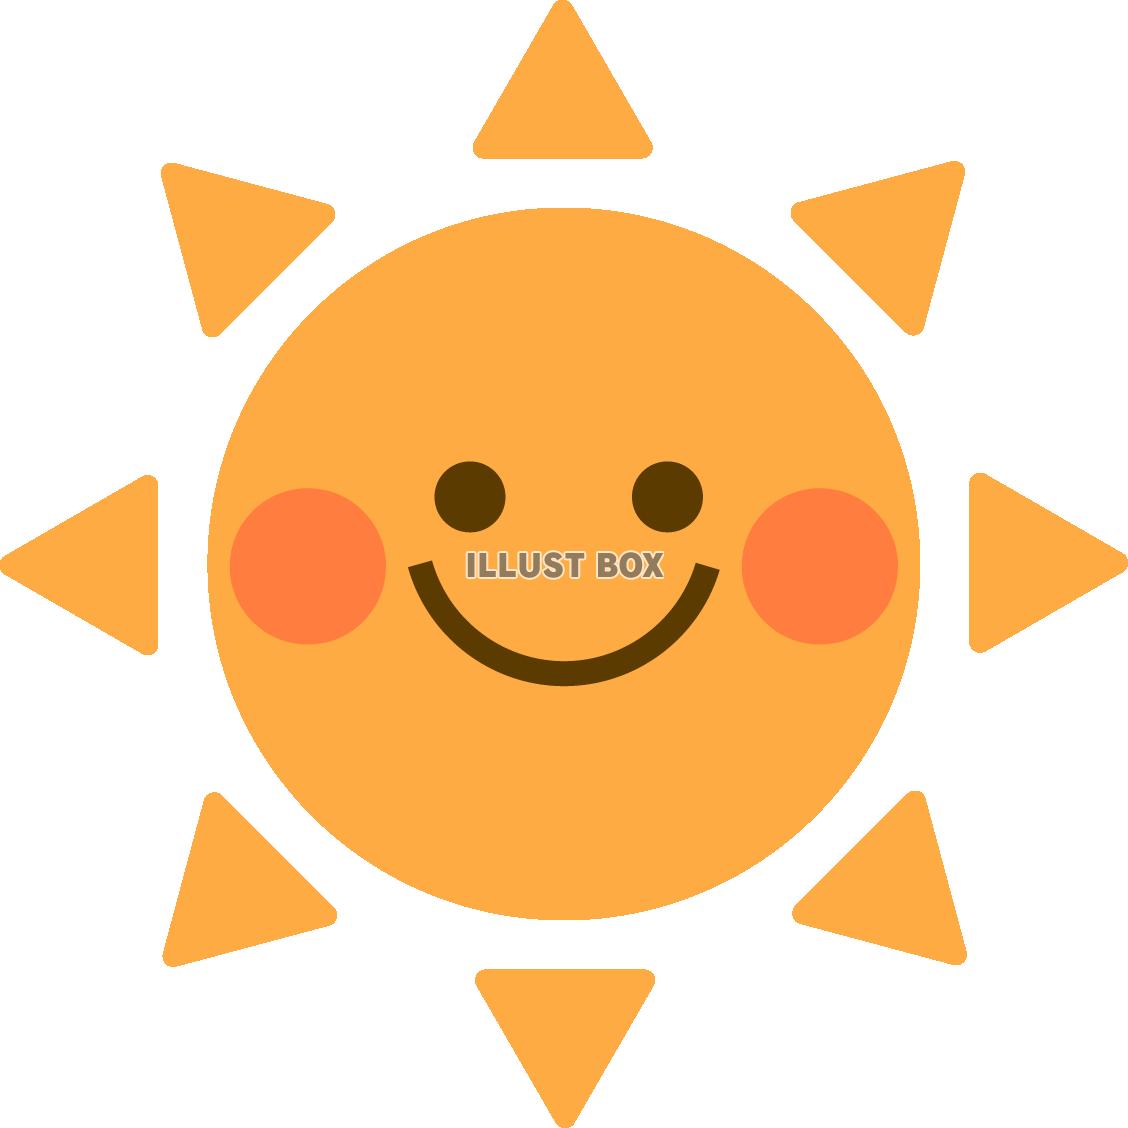 かわいい太陽のキャラクター